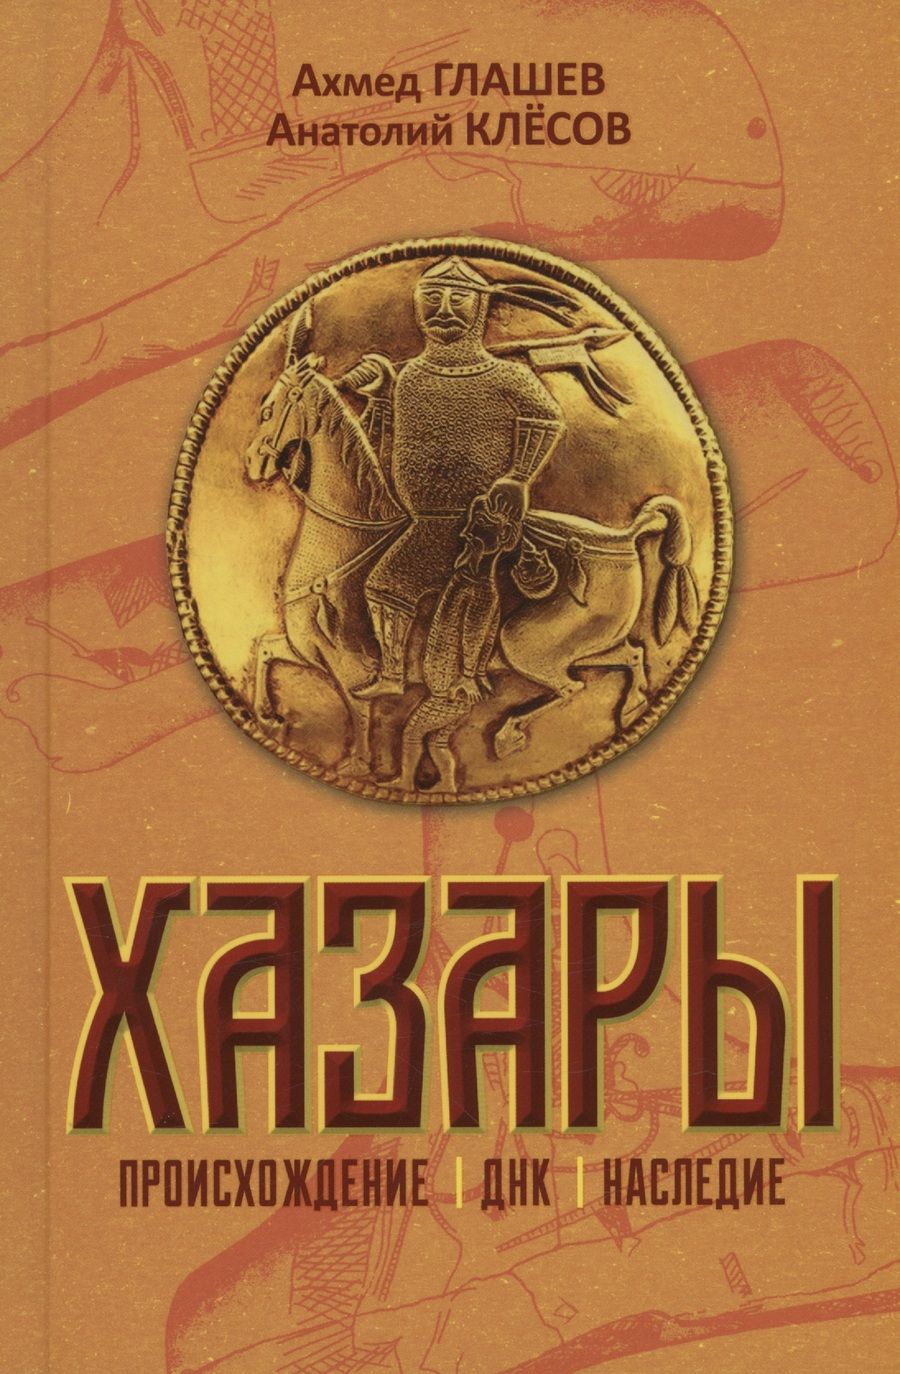 Обложка книги "Клёсов, Глашев: Хазары. Происхождение, ДНК, Наследие"